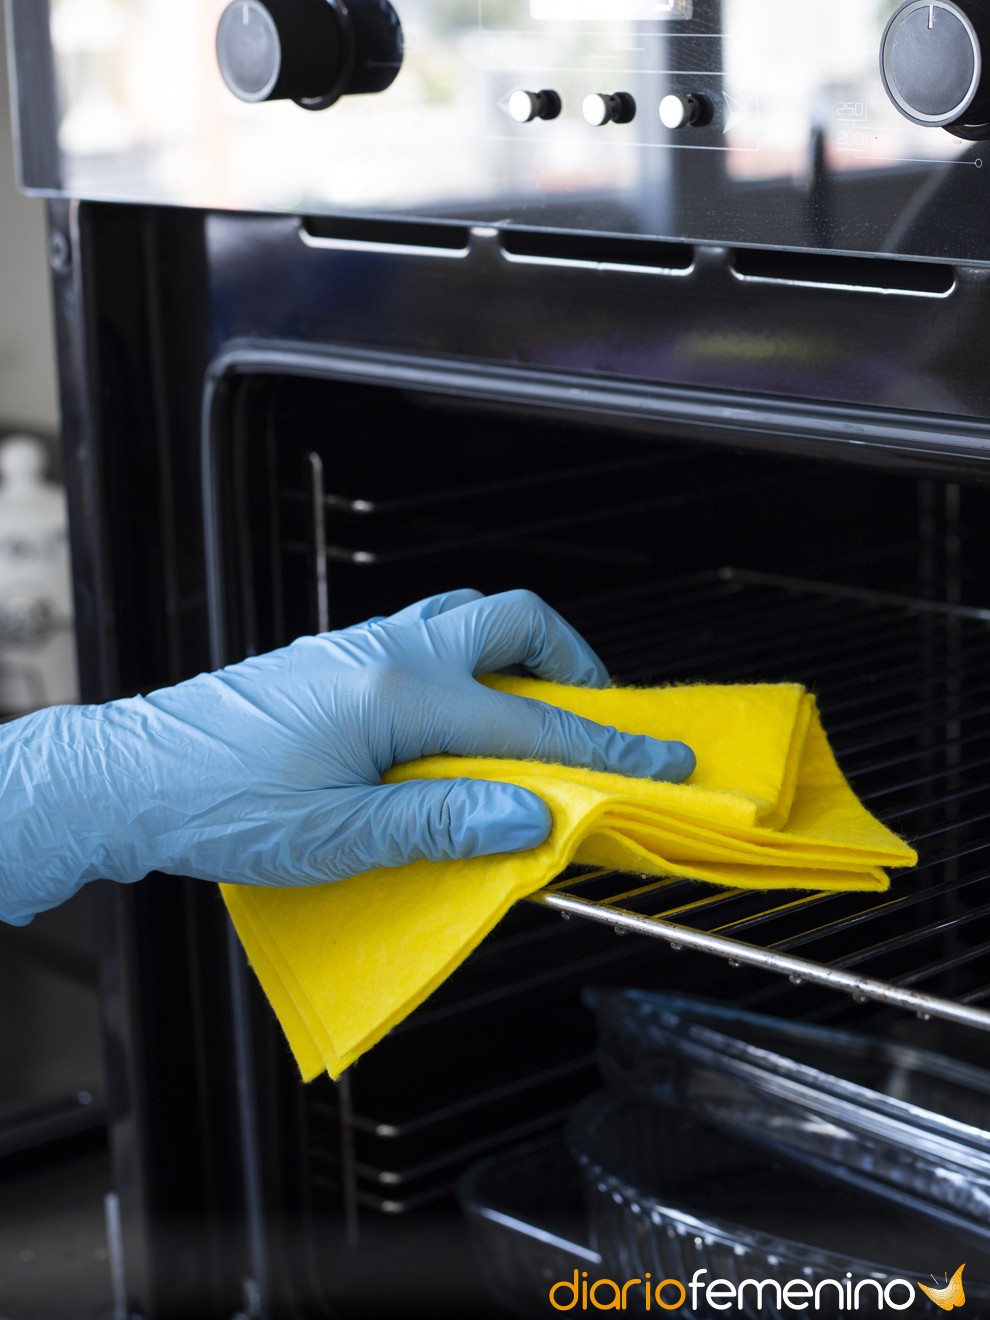 La mejor solución casera para limpiar un horno muy sucio